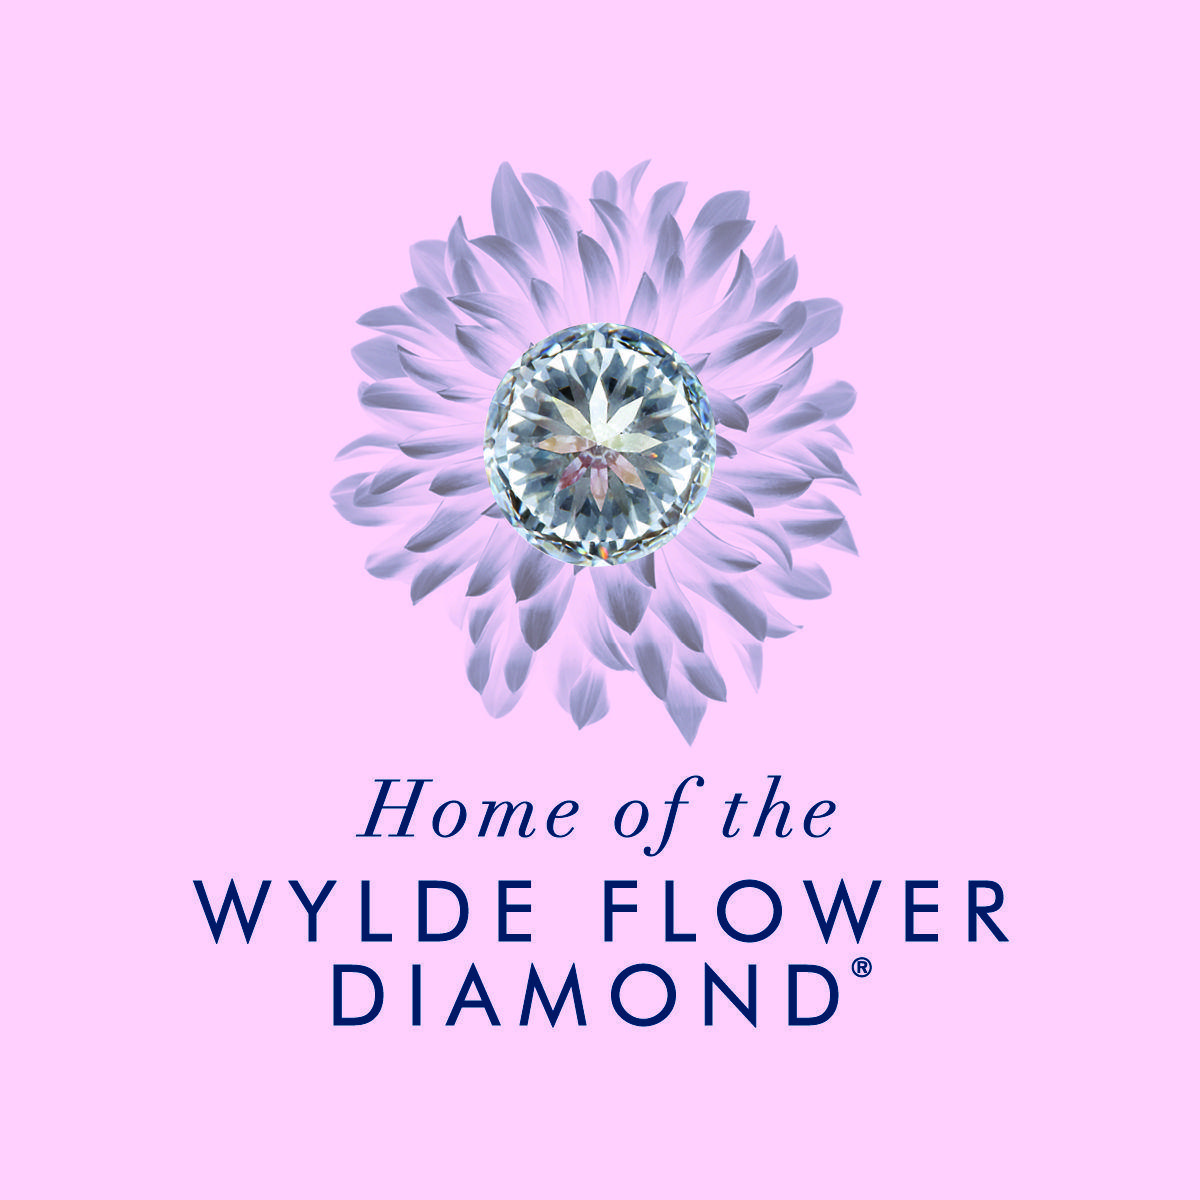 Flower and Diamonds Logo - THE WYLDE FLOWER DIAMOND® STORY - Nicholas Wylde